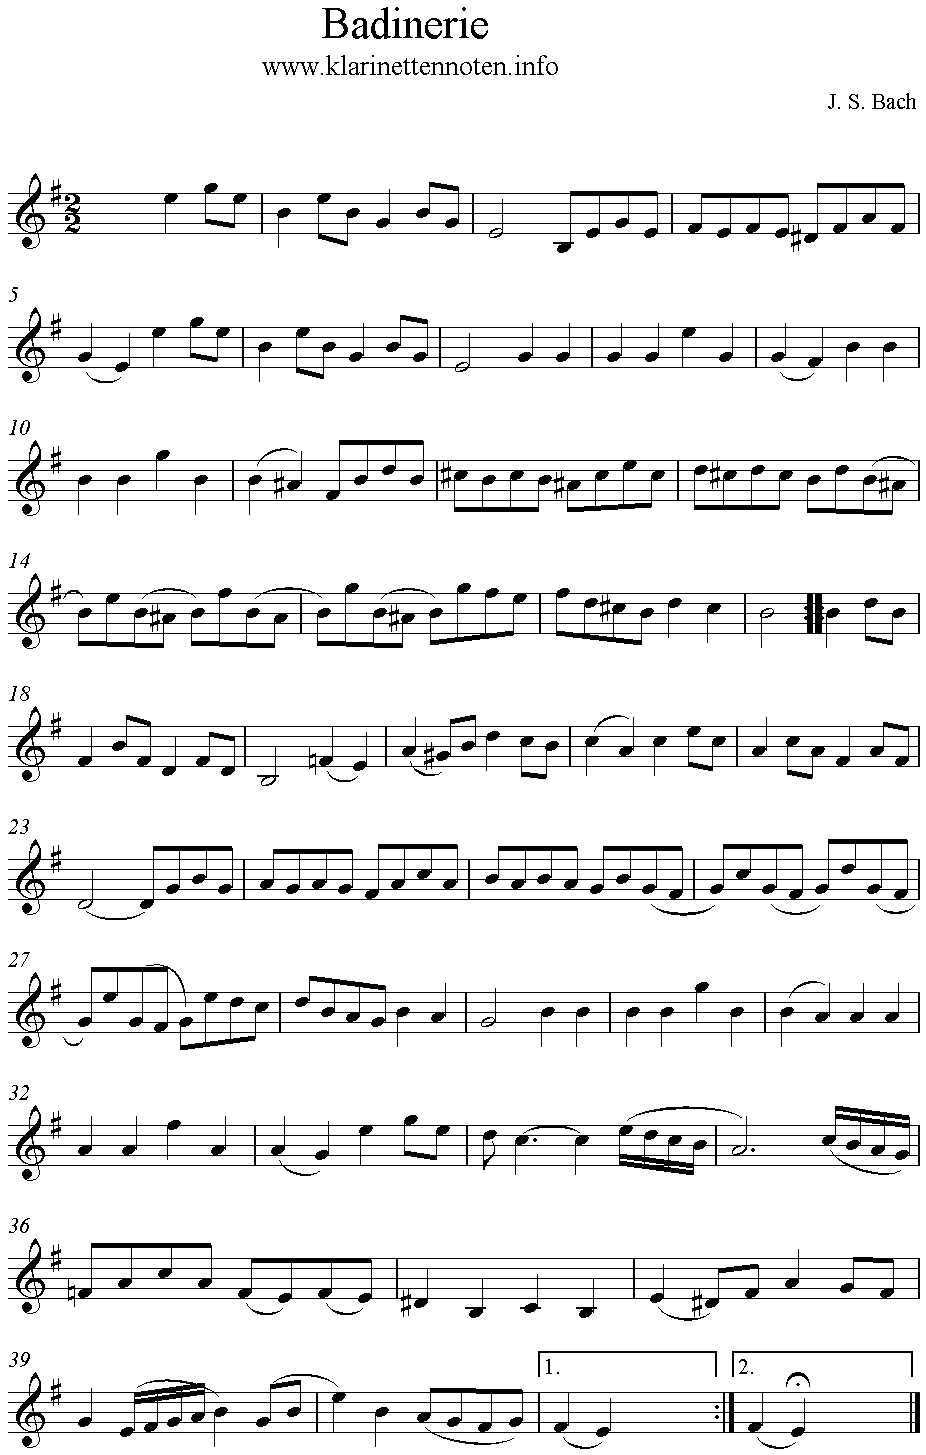 Badinerie Bach , Clarinet, Klarinette